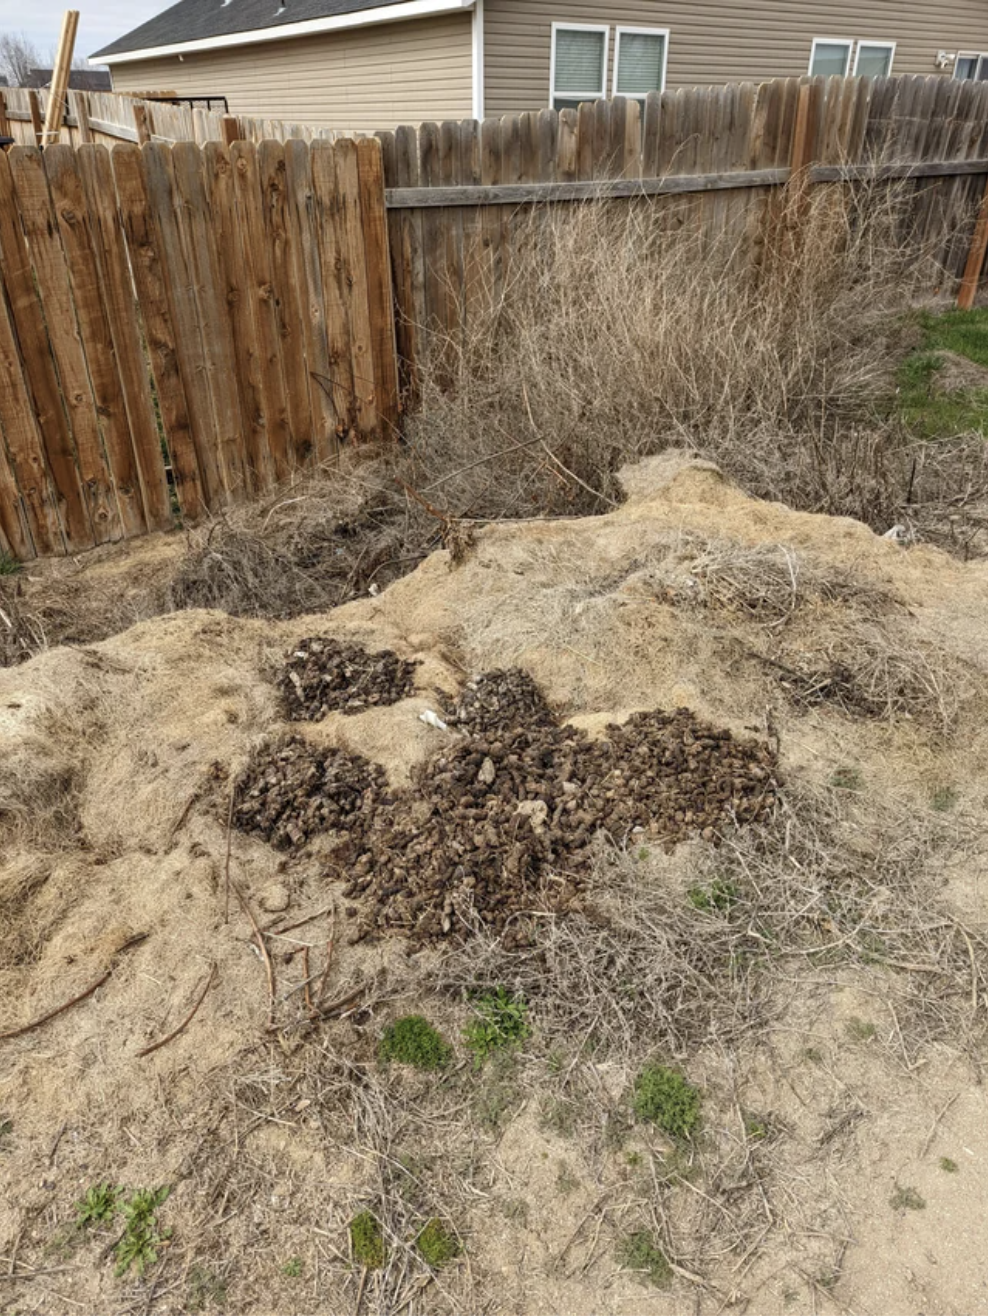 A pile of dog poop